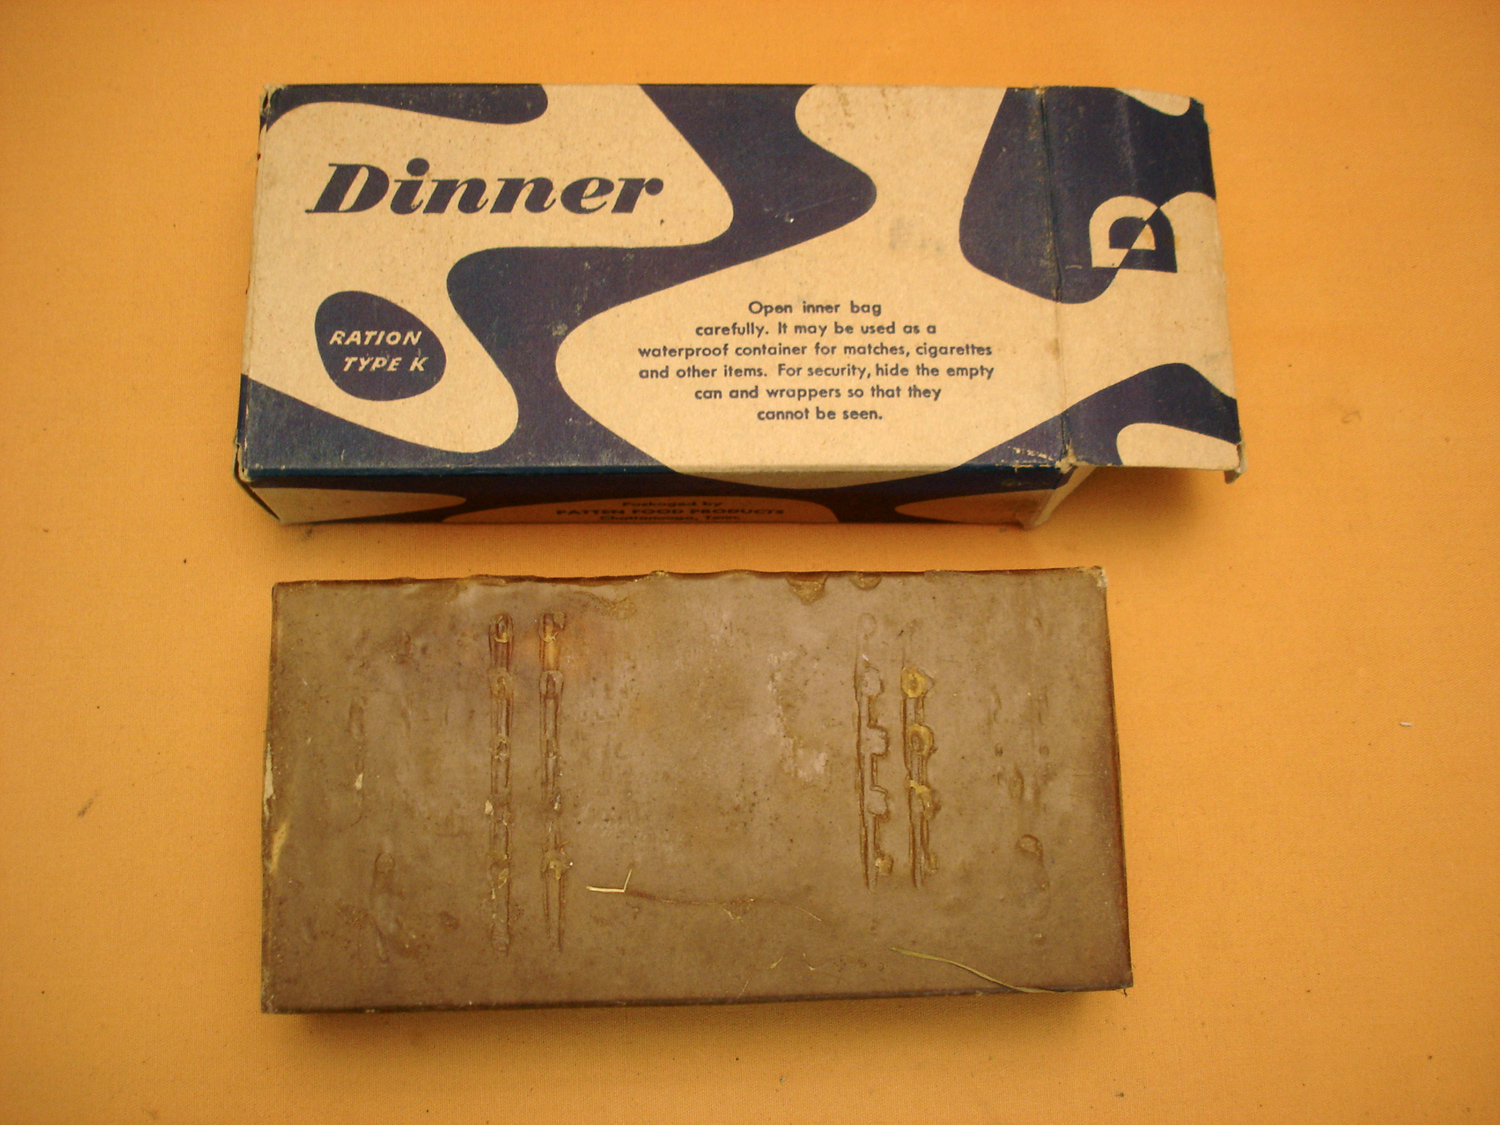 Rare ration US Type K, "Dinner".